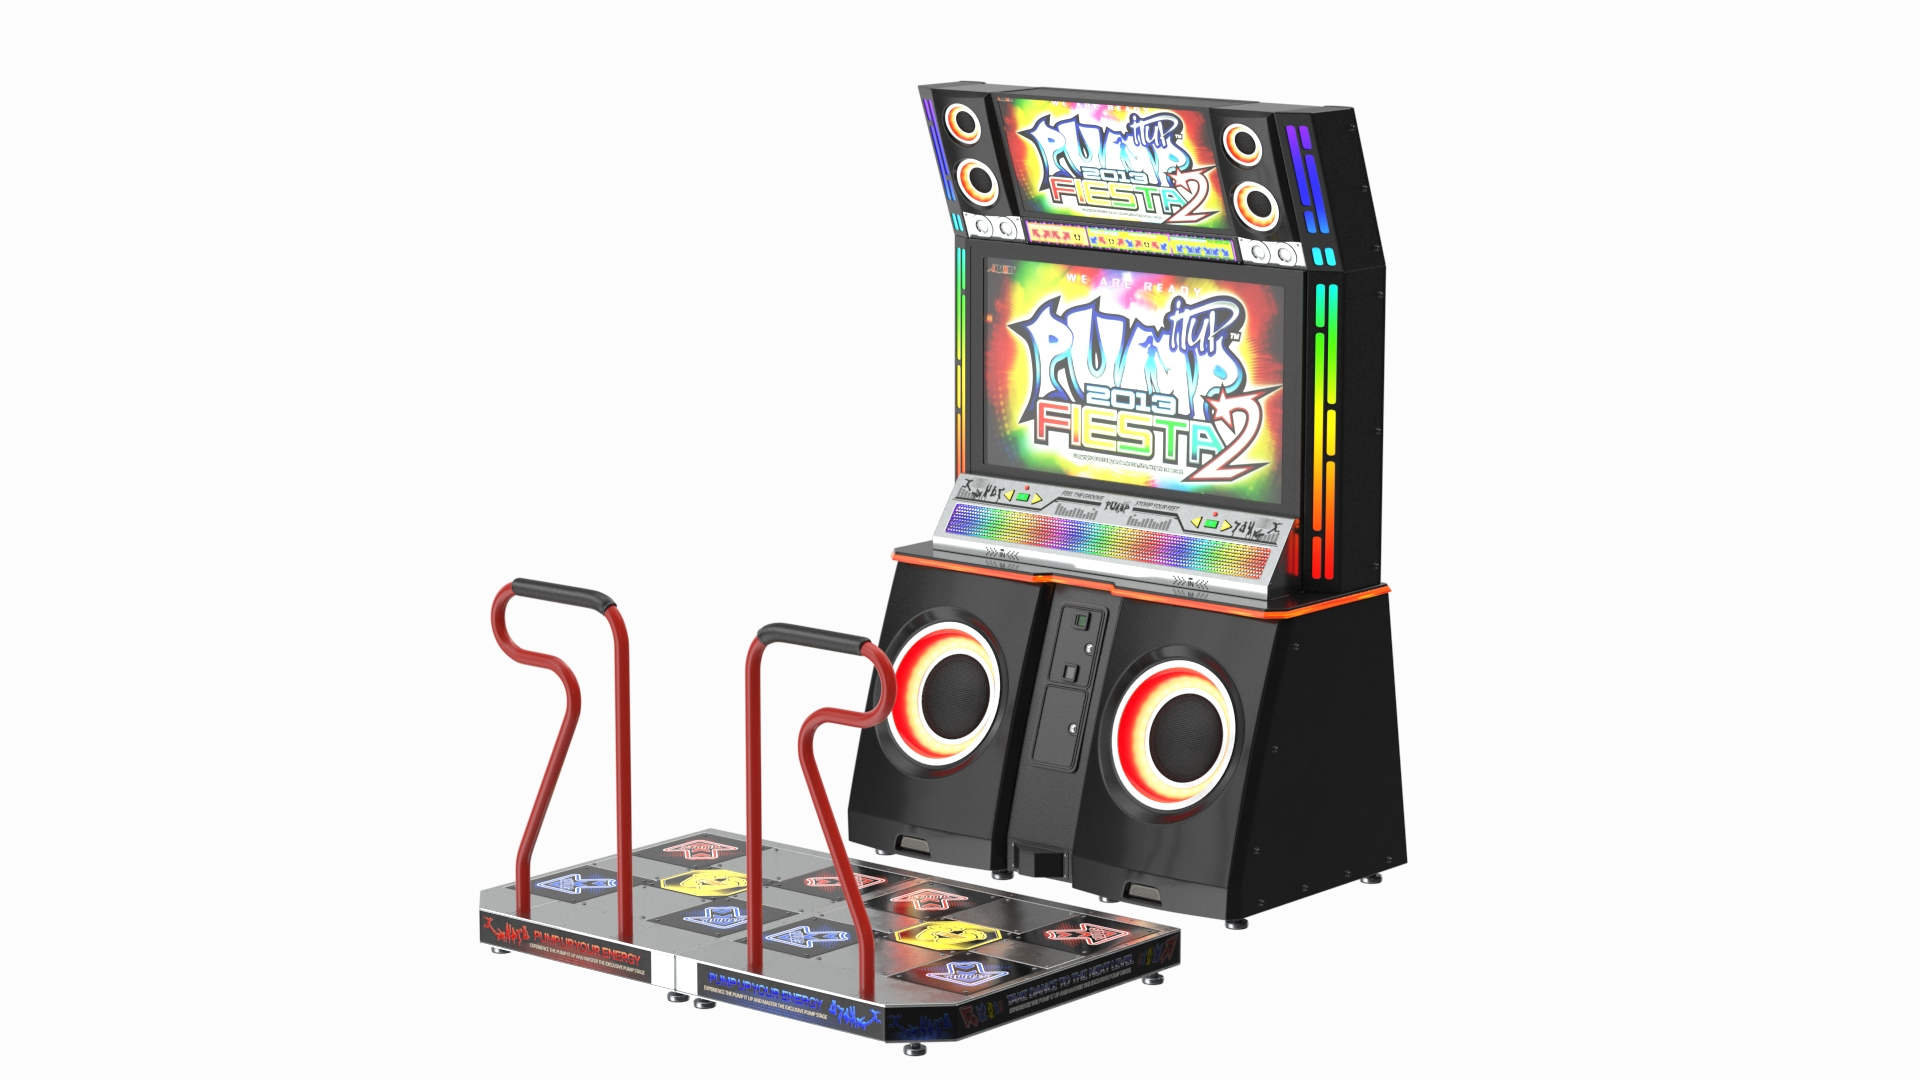 https://p.turbosquid.com/ts-thumb/DU/0obaPV/Nx/pump_it_up_fiesta_2_arcade_dance_machine_360/jpg/1622561918/1920x1080/turn_fit_q99/37f63baef6d49be9cd8adf5b651125ce53fd9590/pump_it_up_fiesta_2_arcade_dance_machine_360-1.jpg